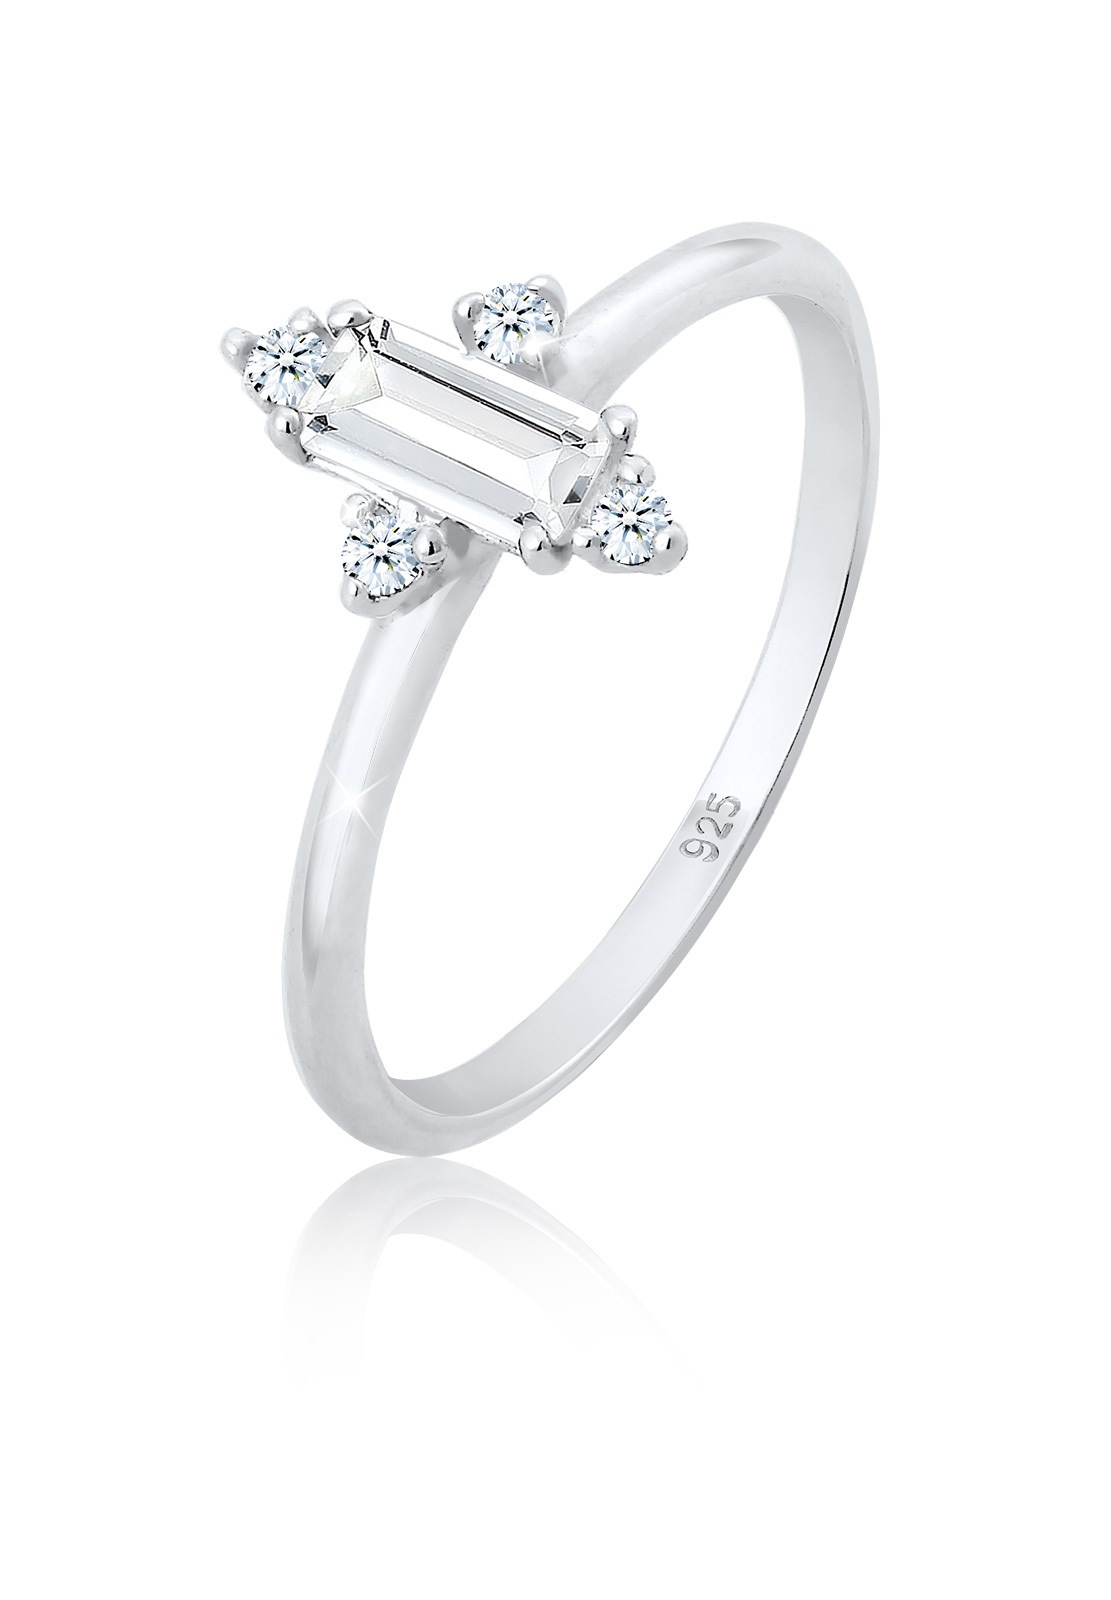 Elli DIAMONDS Verlobungsring Edel (0.06 Topas »Verlobung ct.) Diamant Silber« 925